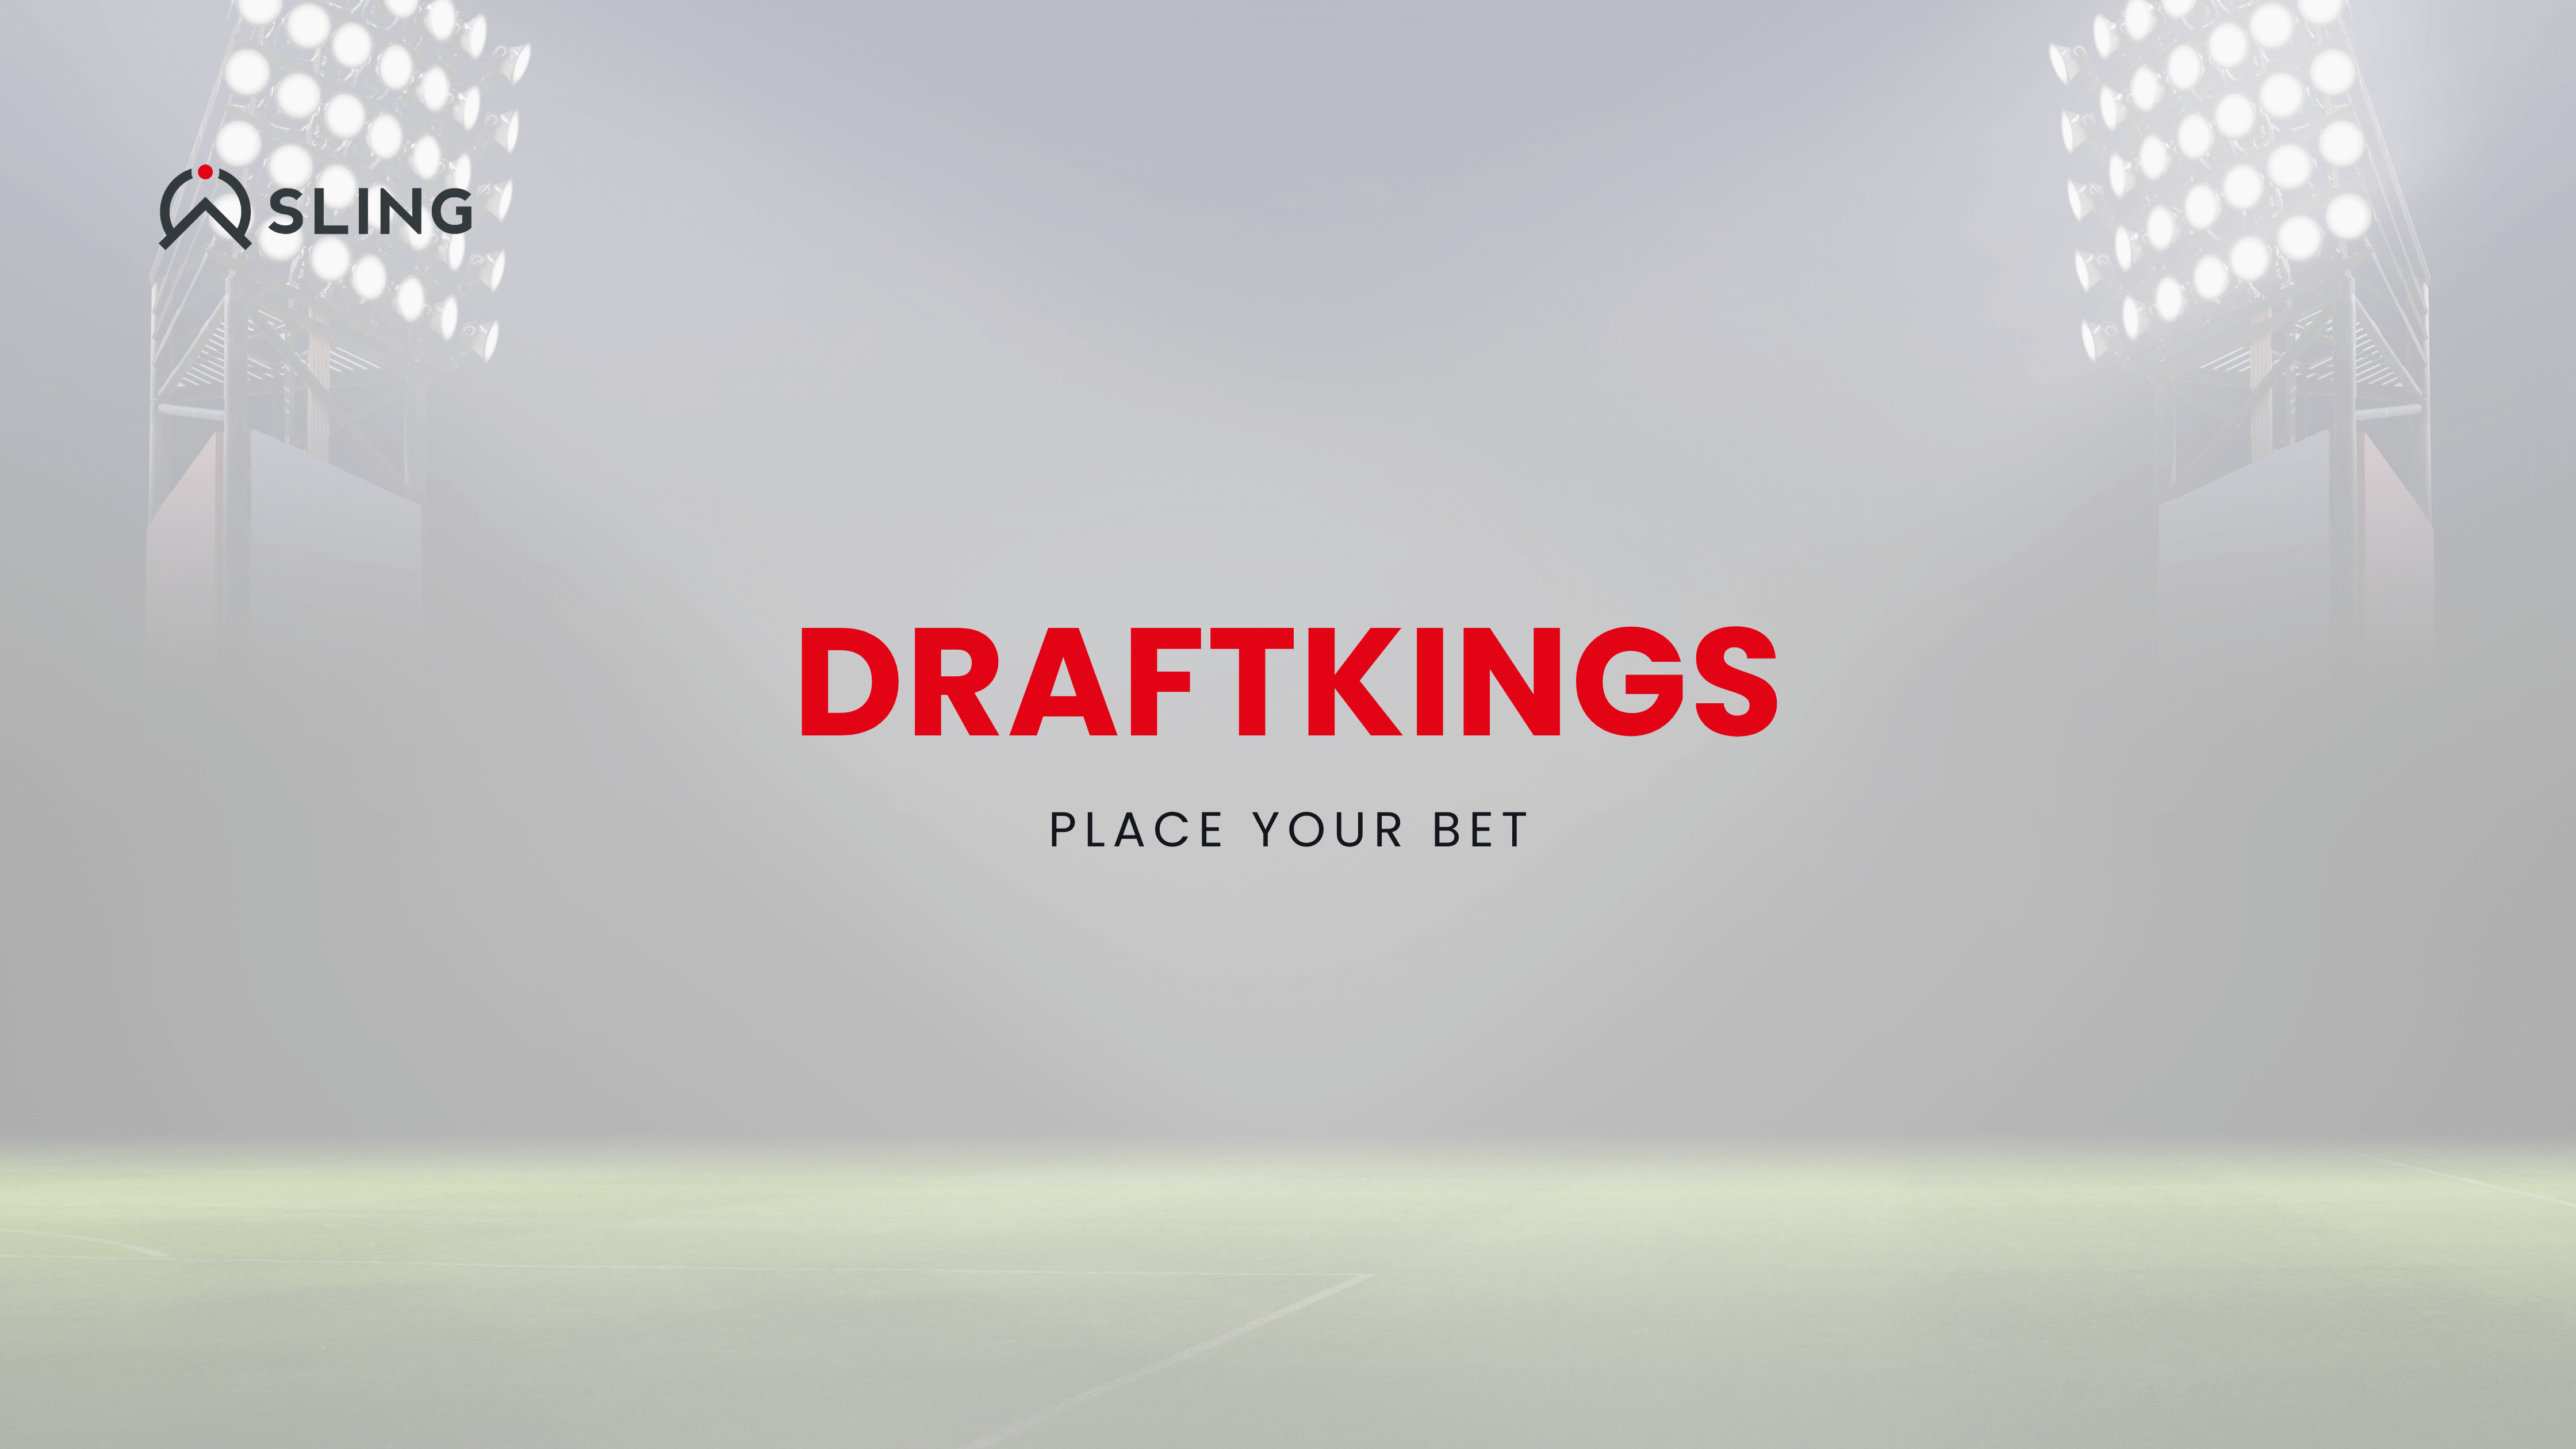 Draft kings - Blog banner